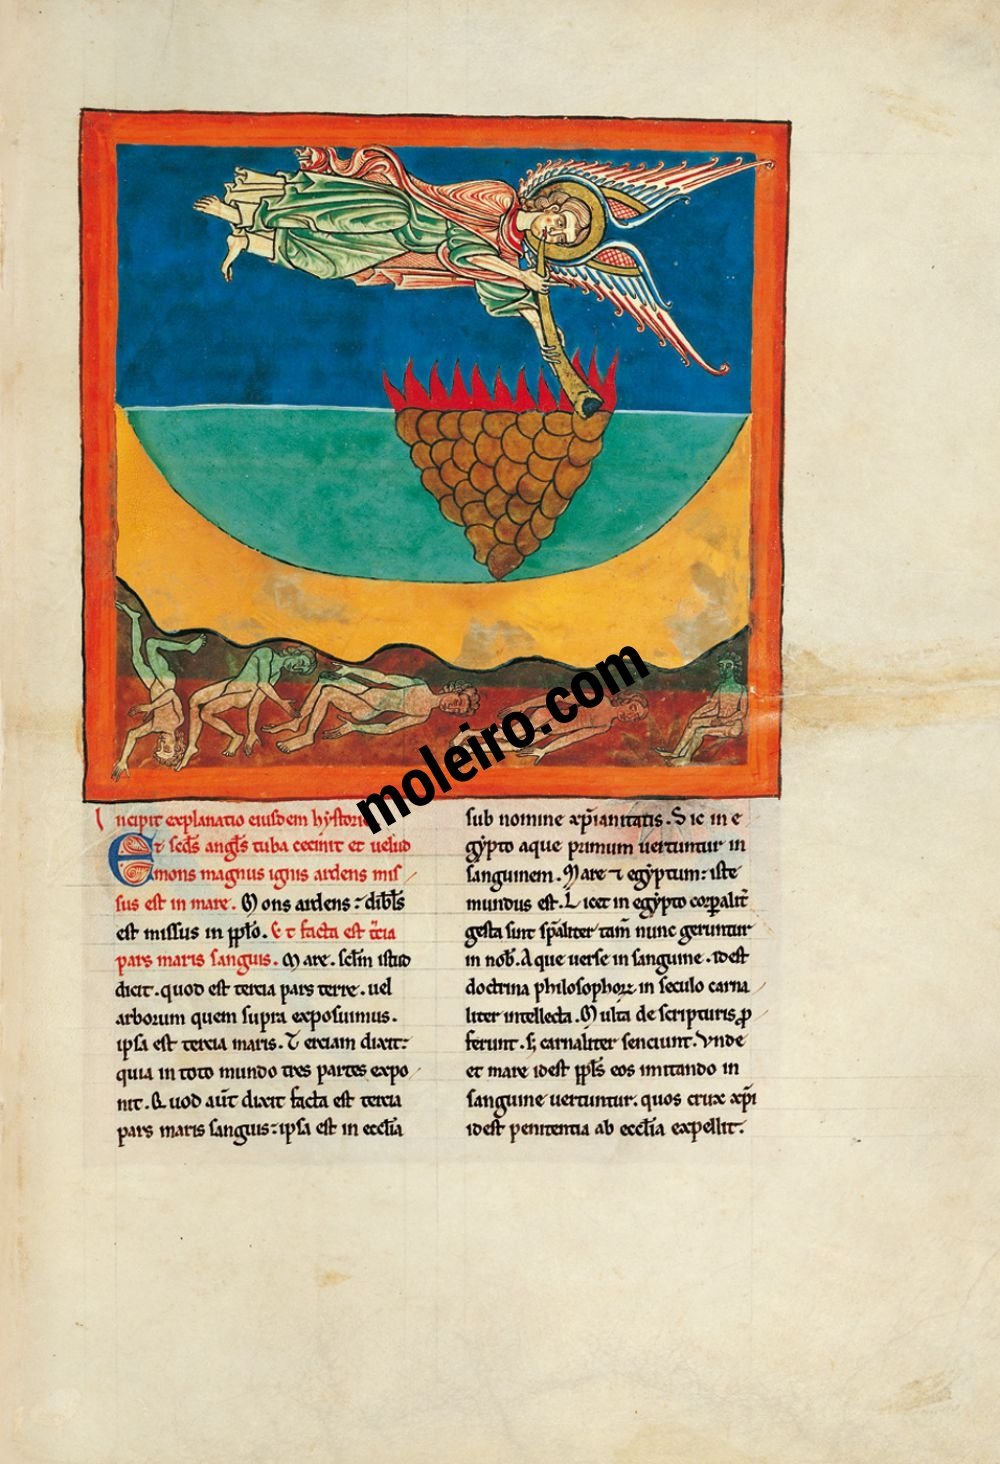 Beatus von Cardeña f. 96r, Der Engel der zweiten Trompete: der ins Meer gestoßene brennende Berg